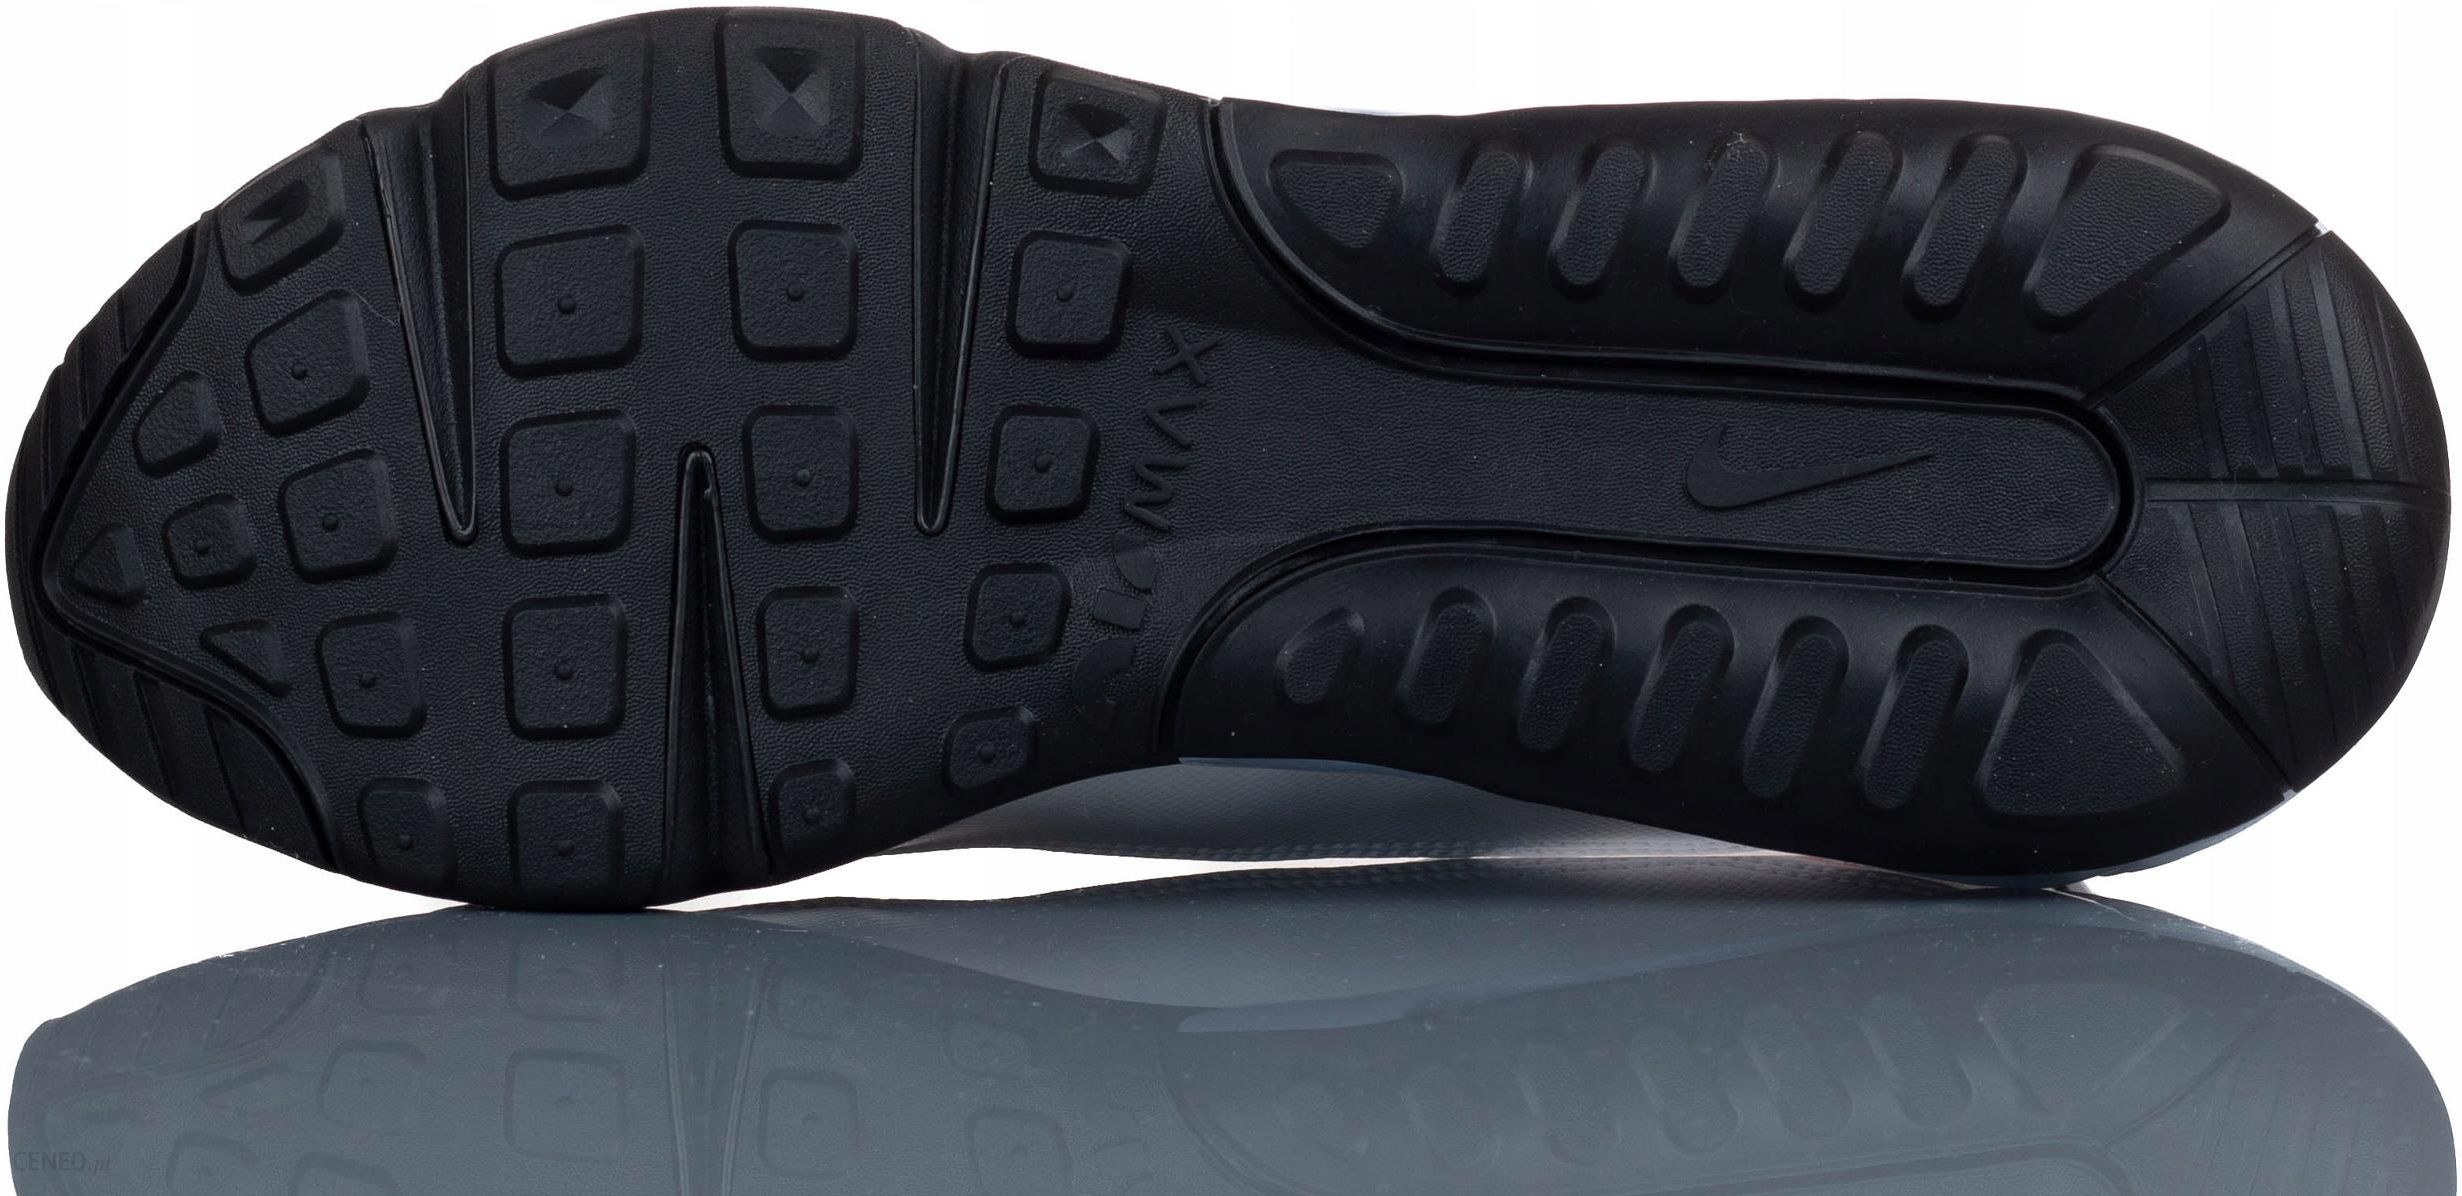 Buty sportowe męskie Nike Air Max 2090 – czy to najlepszy model od